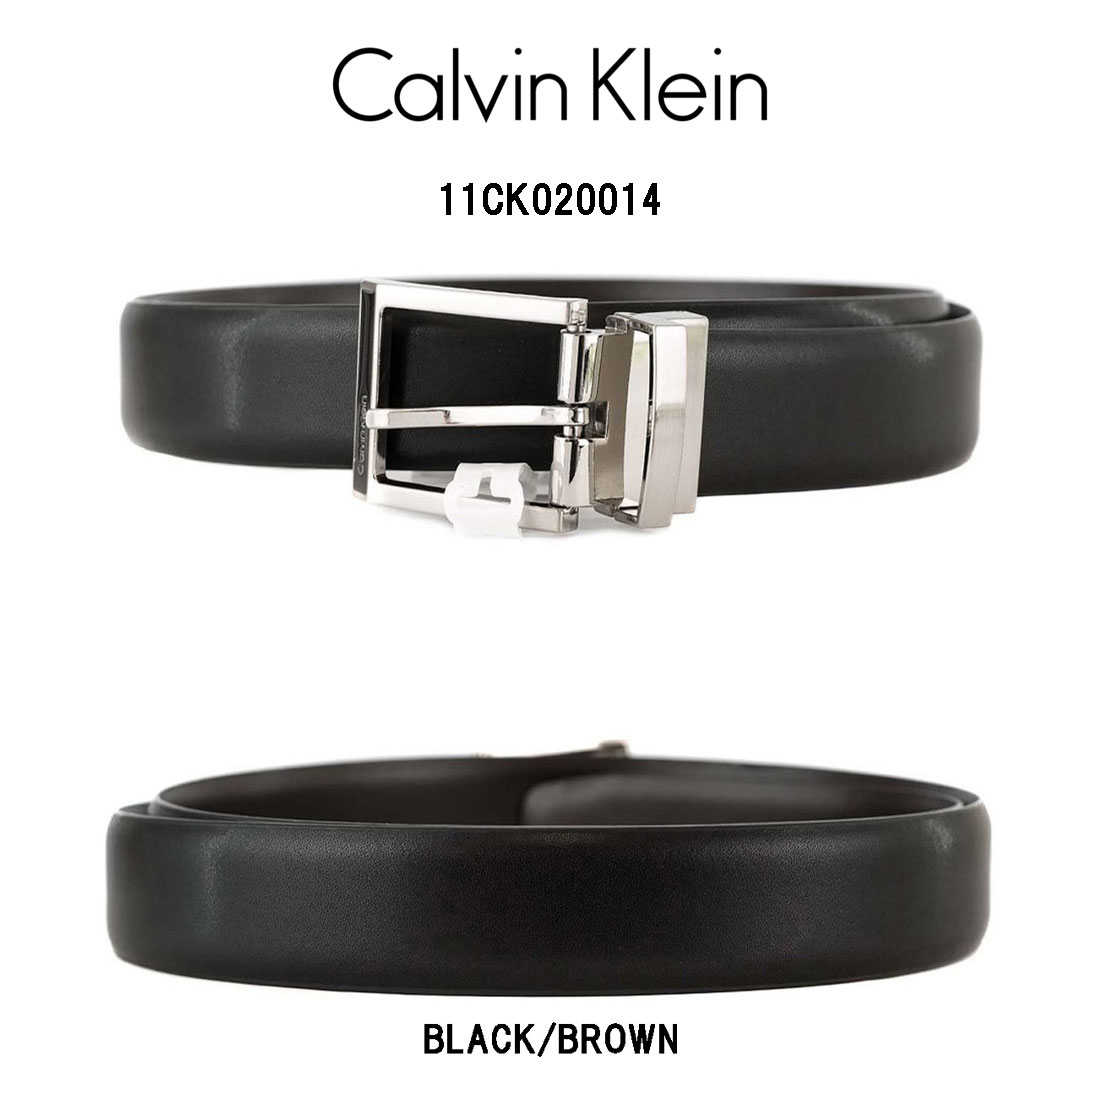 Calvin Klein(カルバンクライン)レザー ベルト リバーシブル スーツ ビジネス カジュアル メンズ ck 11CK020014 メンズベルト